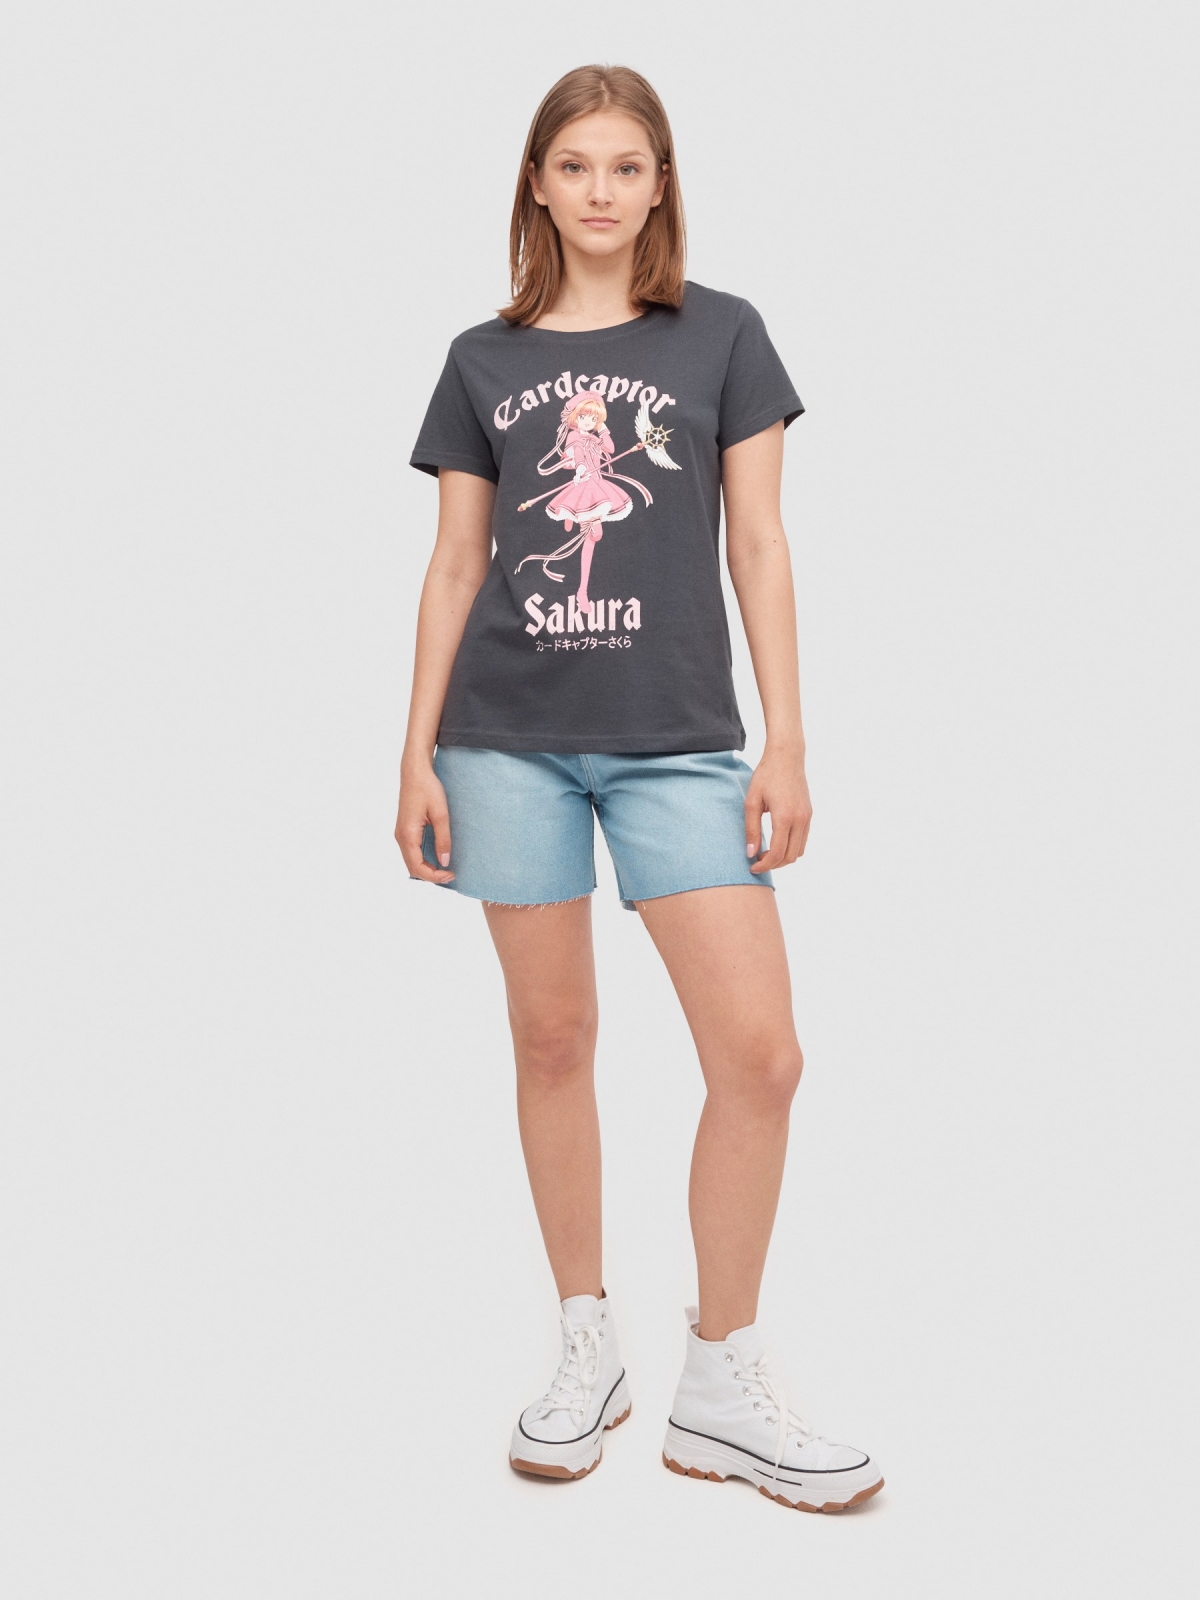 T-shirt Cardcaptor Sakura cinza escuro vista geral frontal